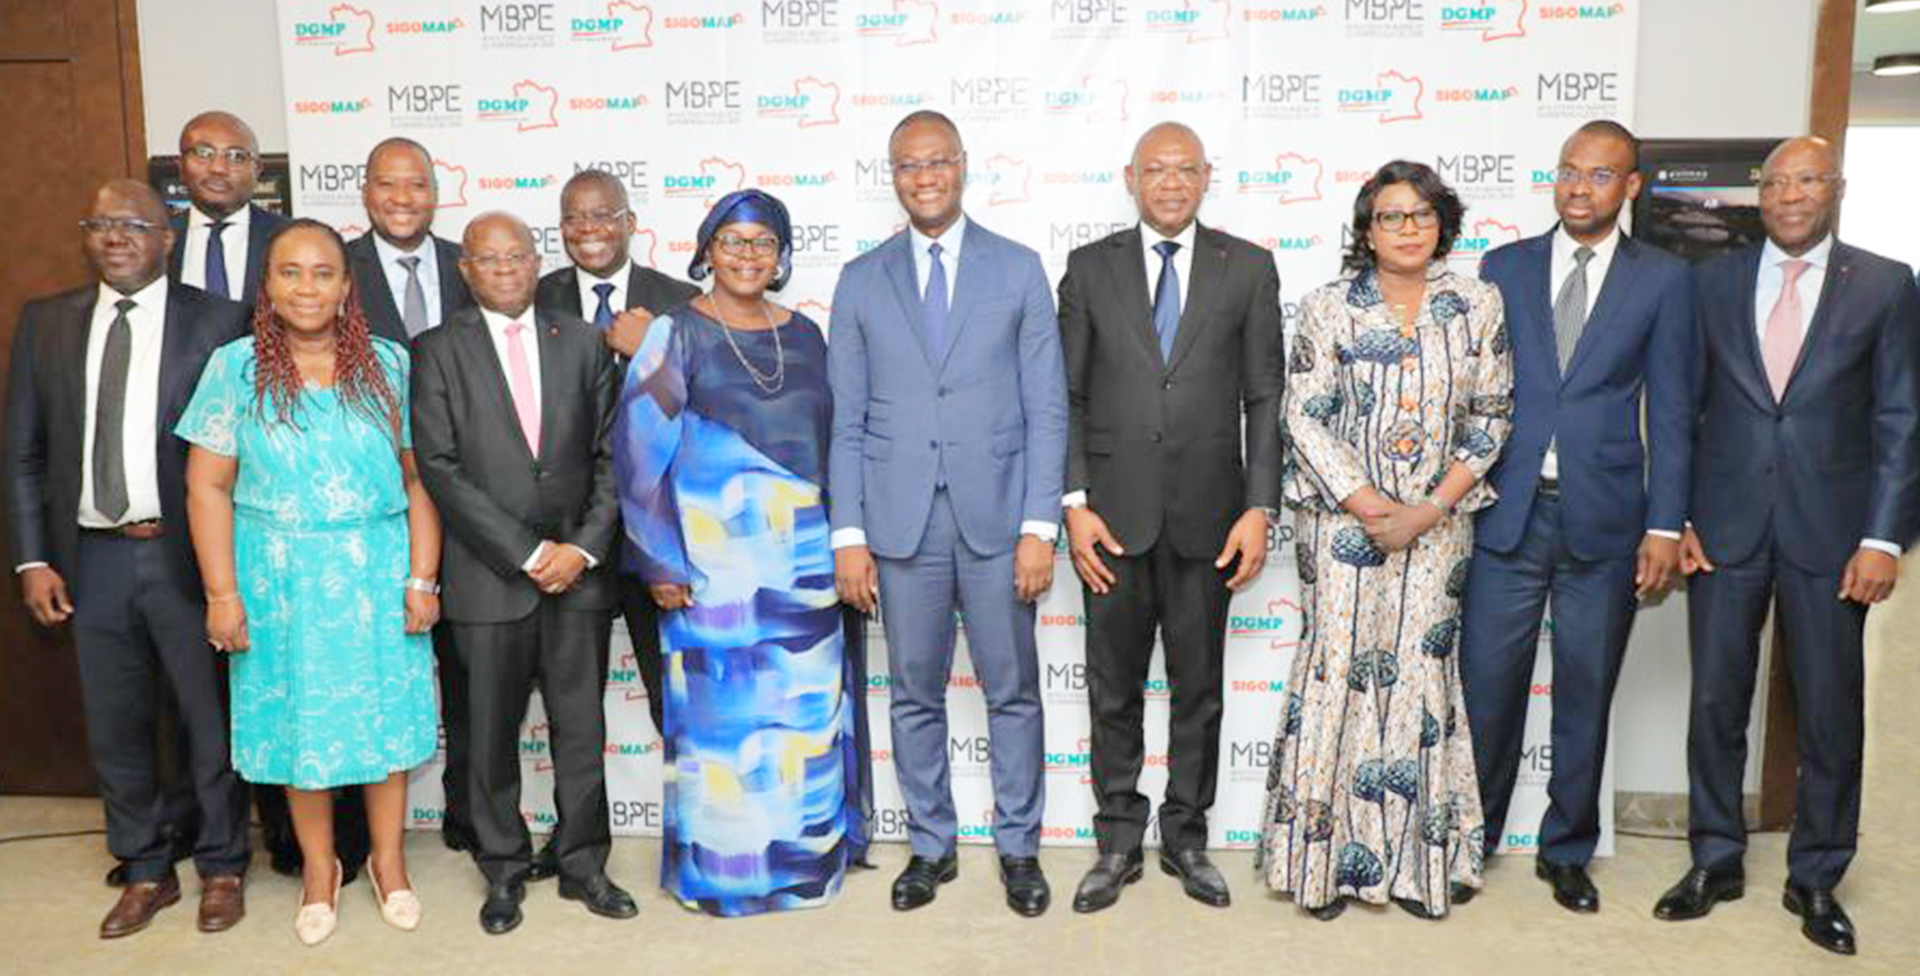 SIGOMAP lancé pour assurer la transparence dans les marchés publics en Côte d’Ivoire